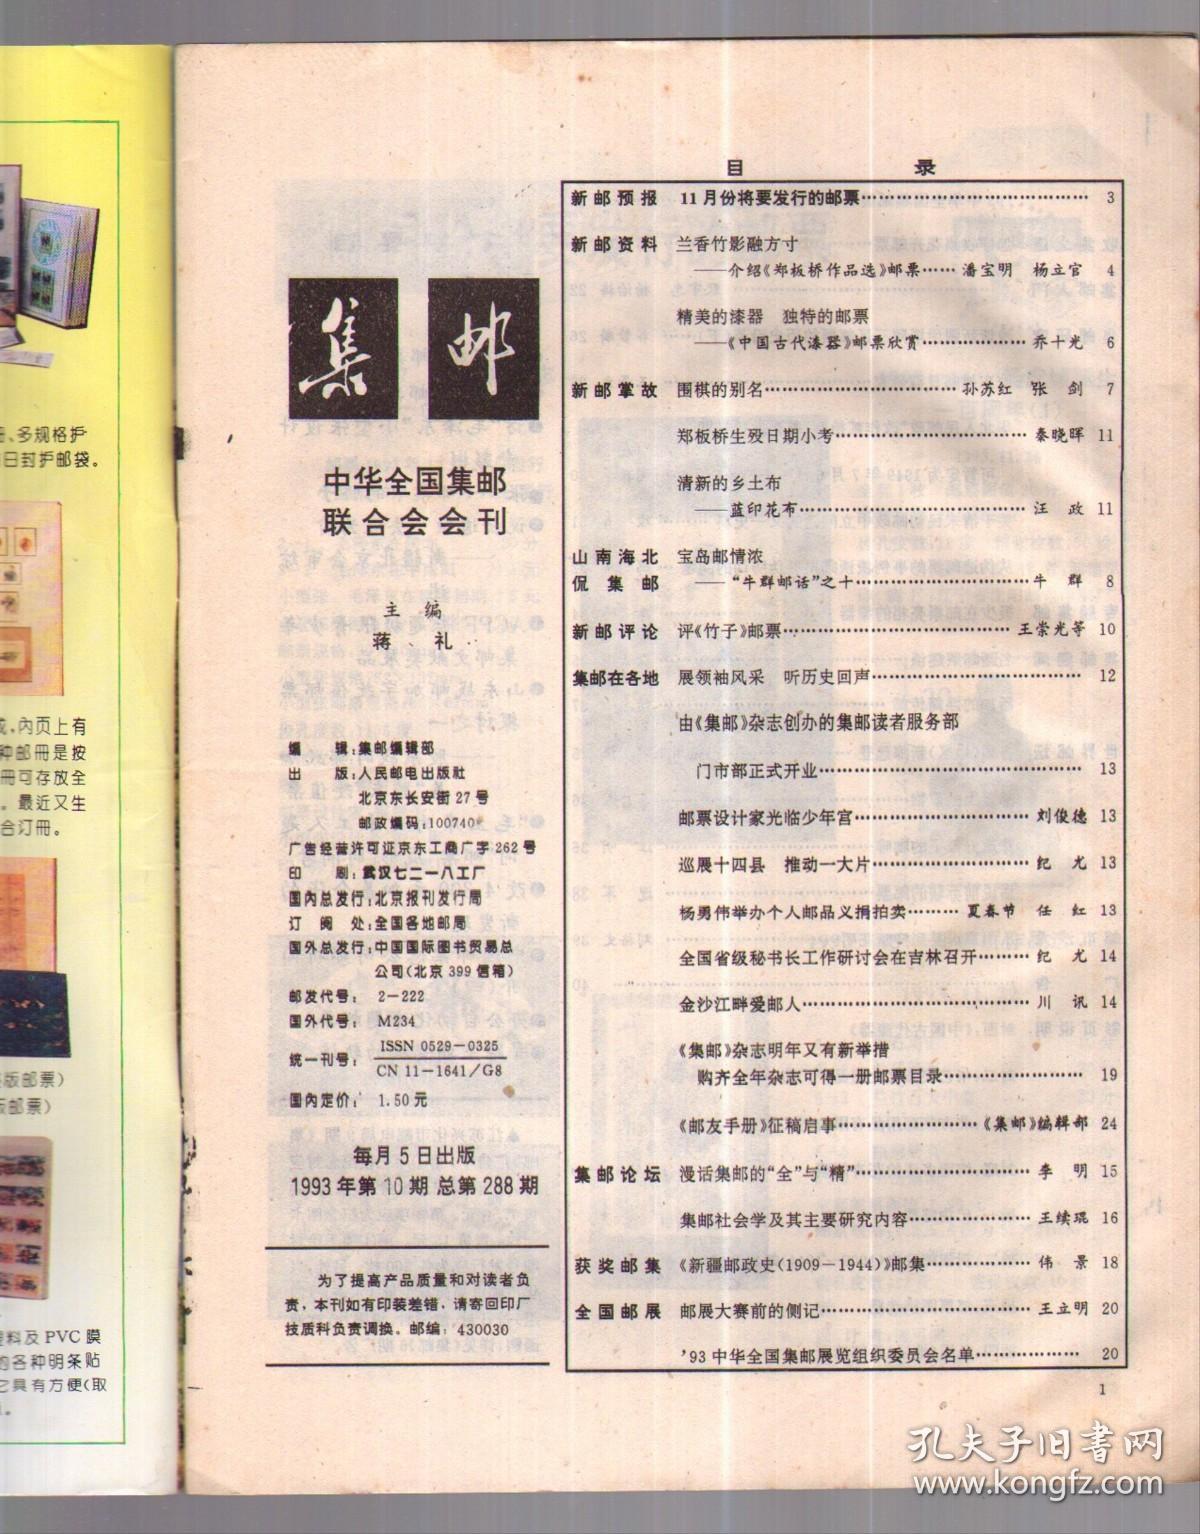 集邮， 1993年第10期总288【本期有中插，有本年“有奖拼图”图案之十，不缺页。】